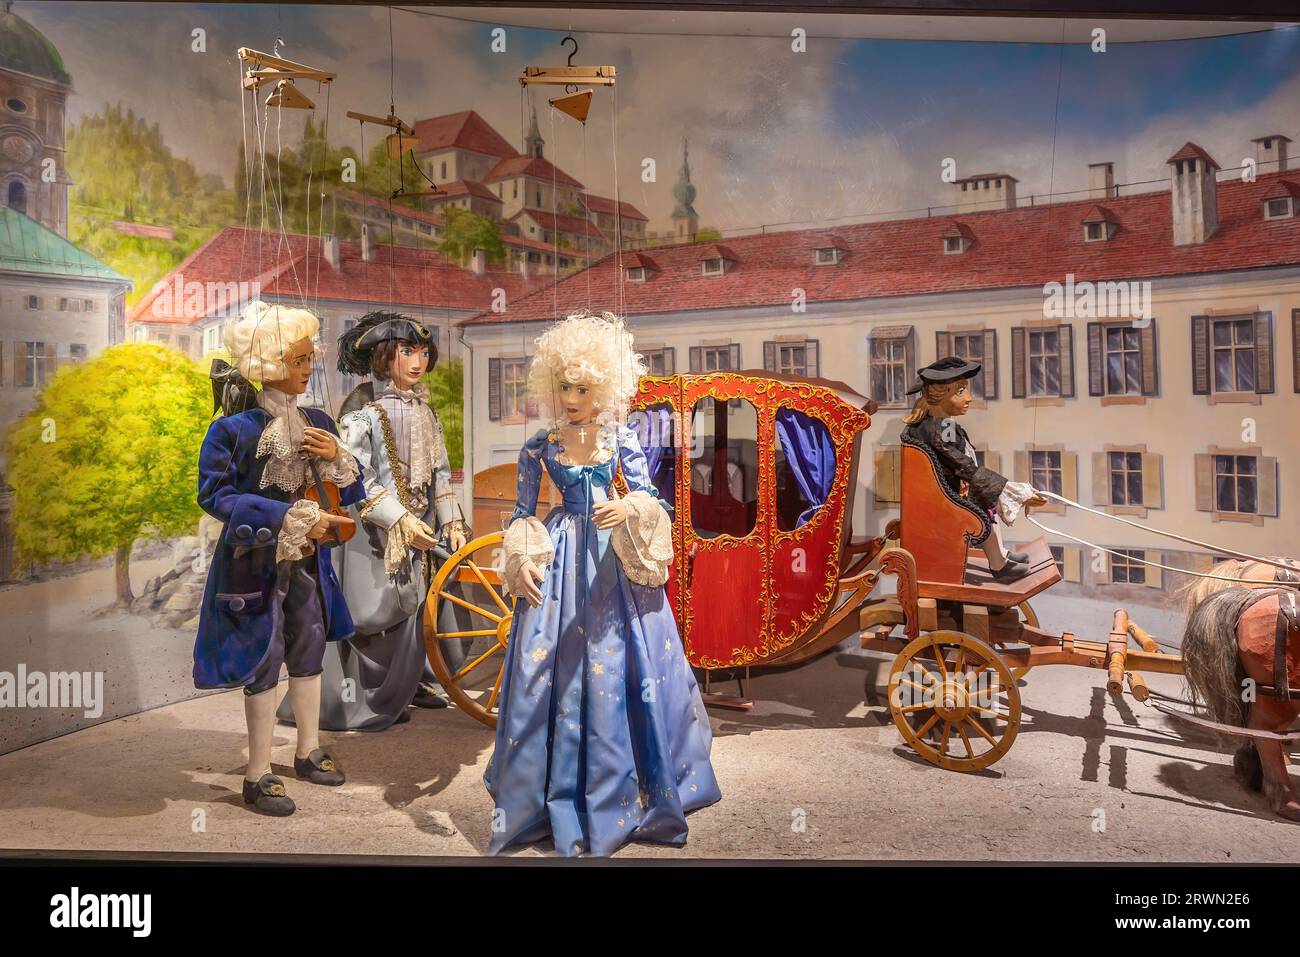 Marionnettes recréant le retour Mozart à Salzbourg au Musée Marionette dans la forteresse de Hohensalzburg - Salzbourg, Autriche Banque D'Images